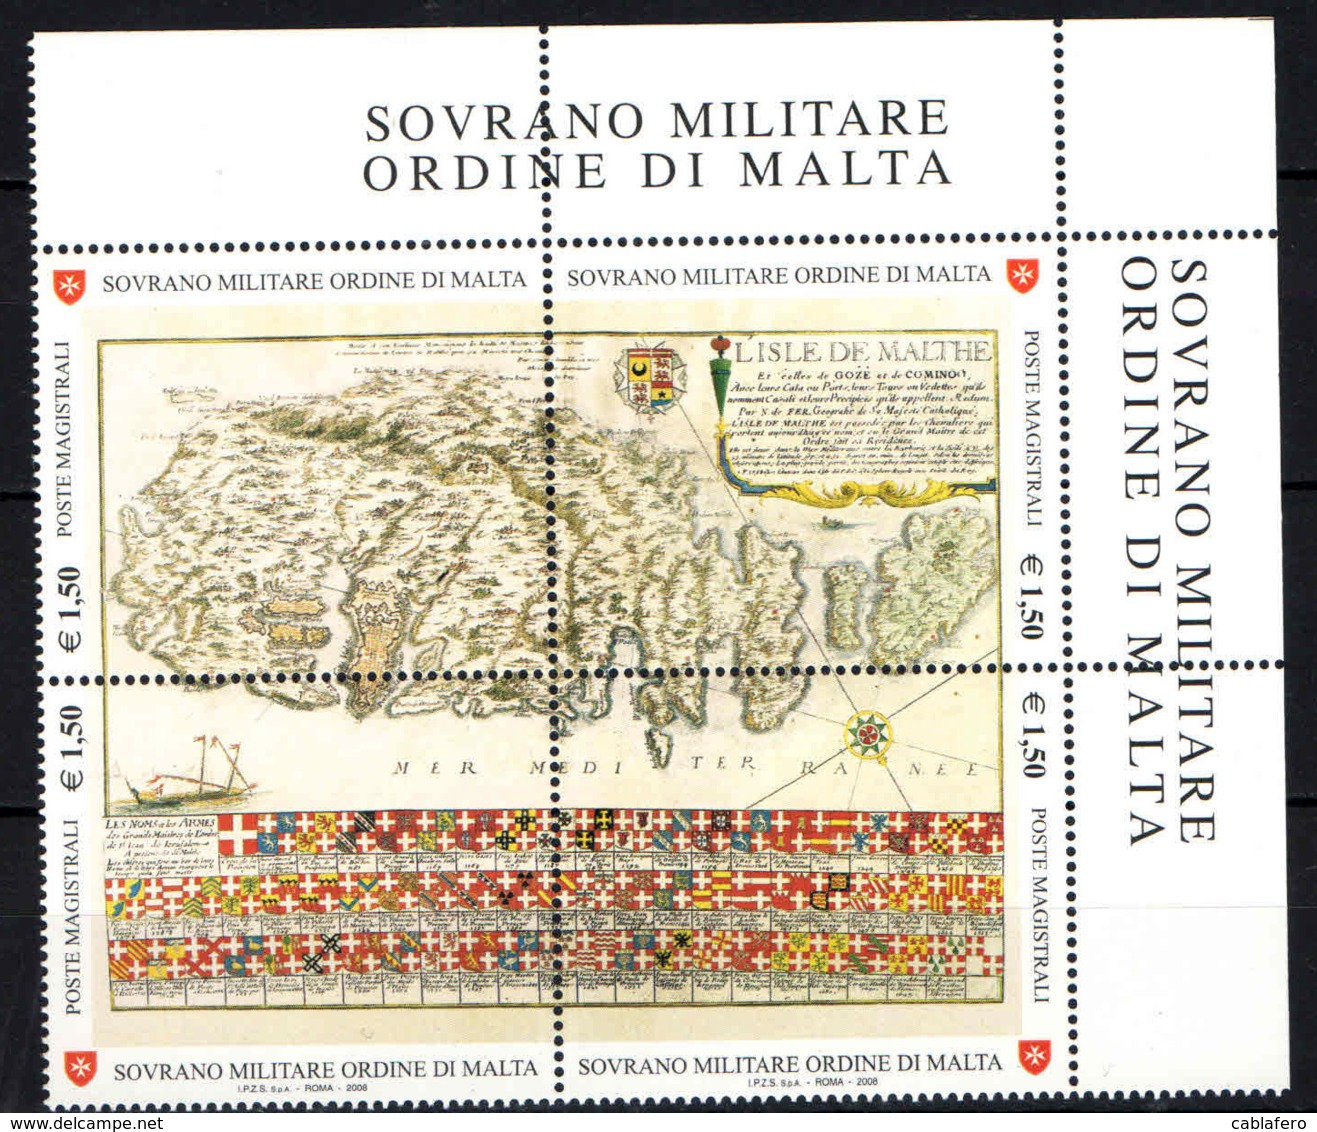 SMOM - 2008 - ANTICHE TAVOLE GEOGRAFICHE - CARTA DEL XVII SECOLO DELL'ISOLA DI MALTA - MNH - Sovrano Militare Ordine Di Malta